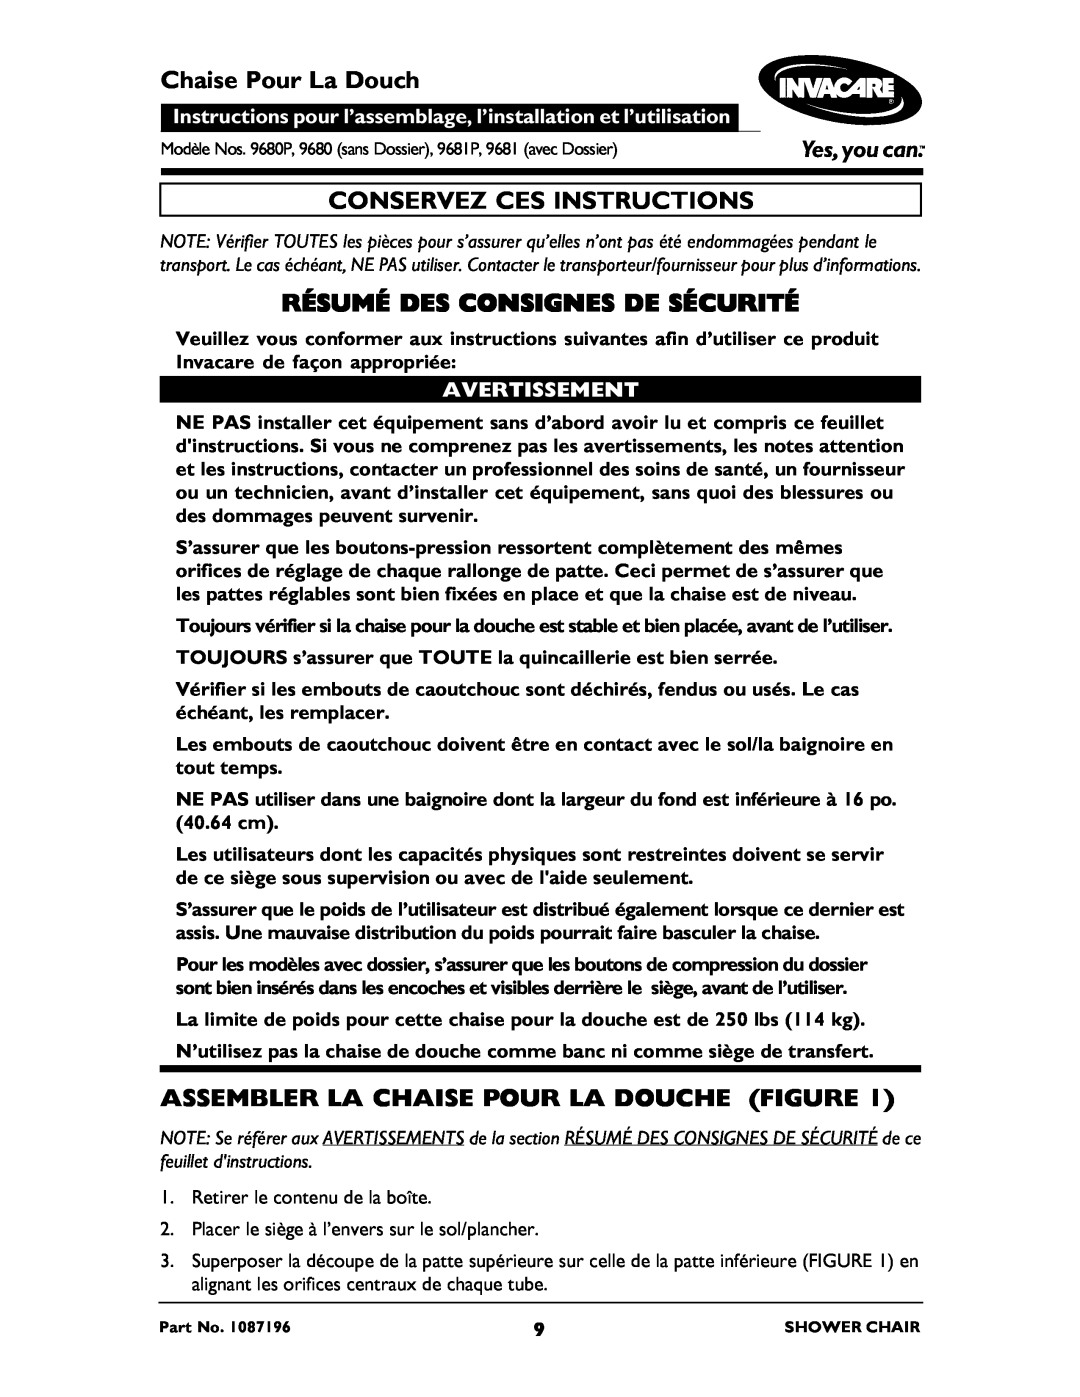 Invacare 9681P, 9680 Chaise Pour La Douch, Conservez Ces Instructions, Résumé Des Consignes De Sécurité, Avertissement 